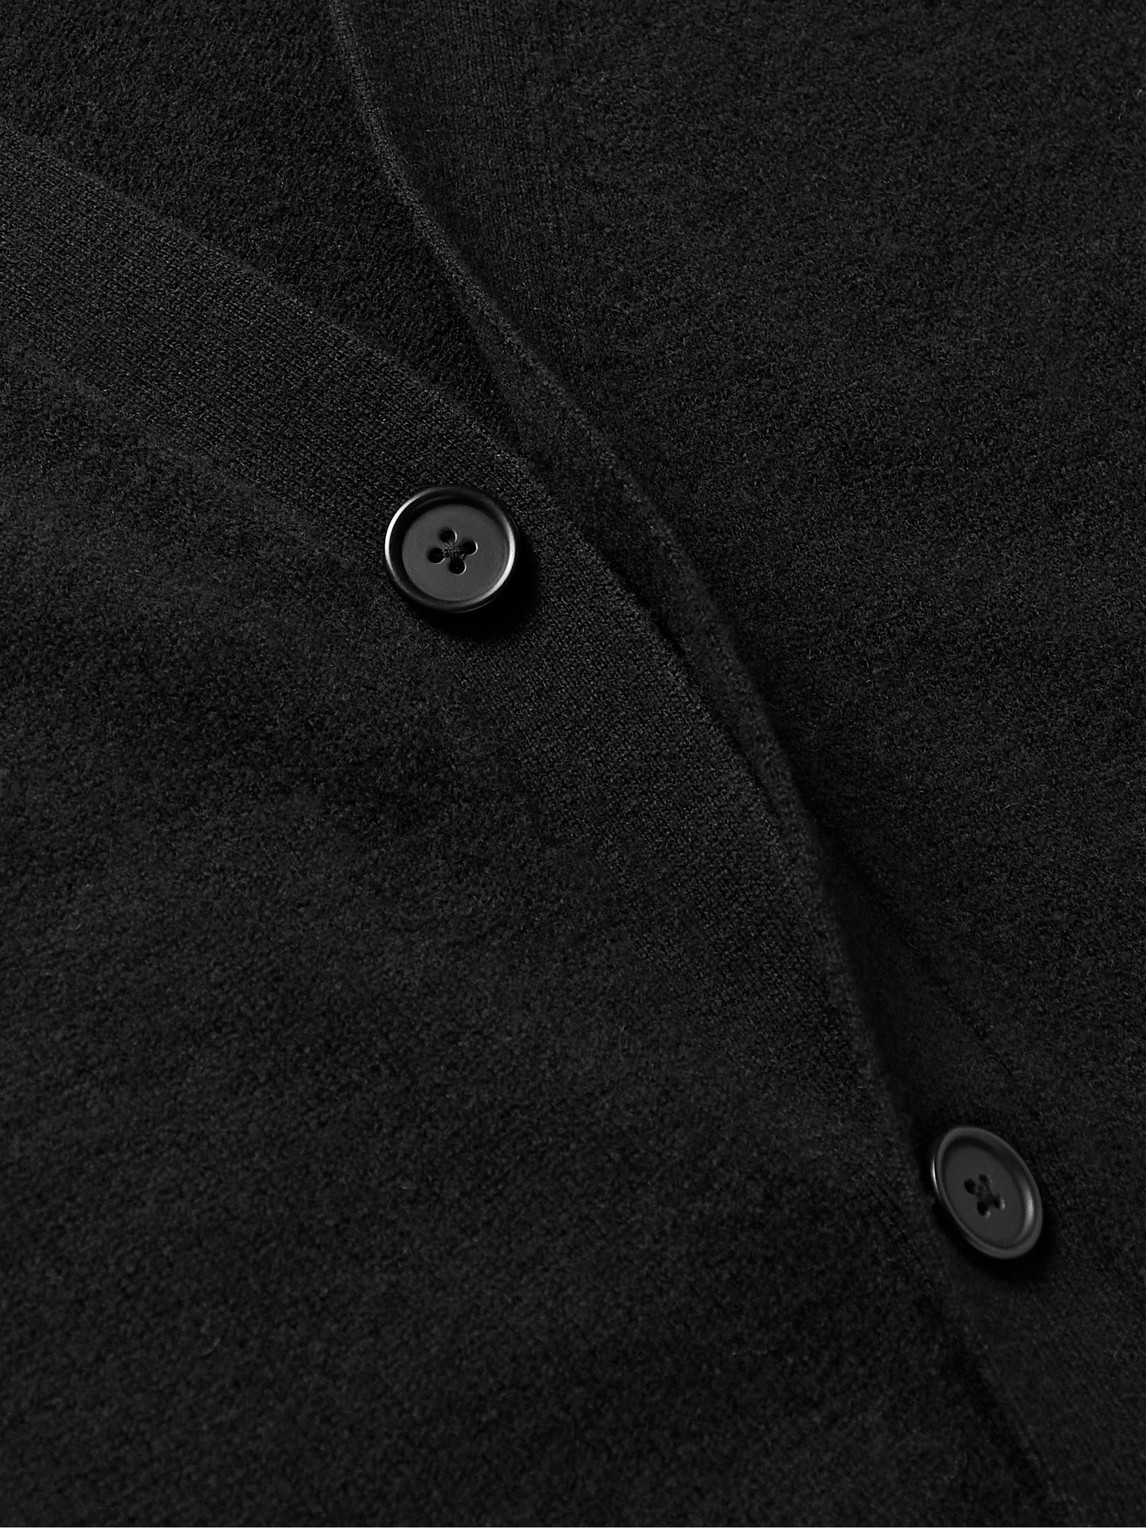 Shop Acne Studios Keve Logo-appliquéd Wool Cardigan In Black